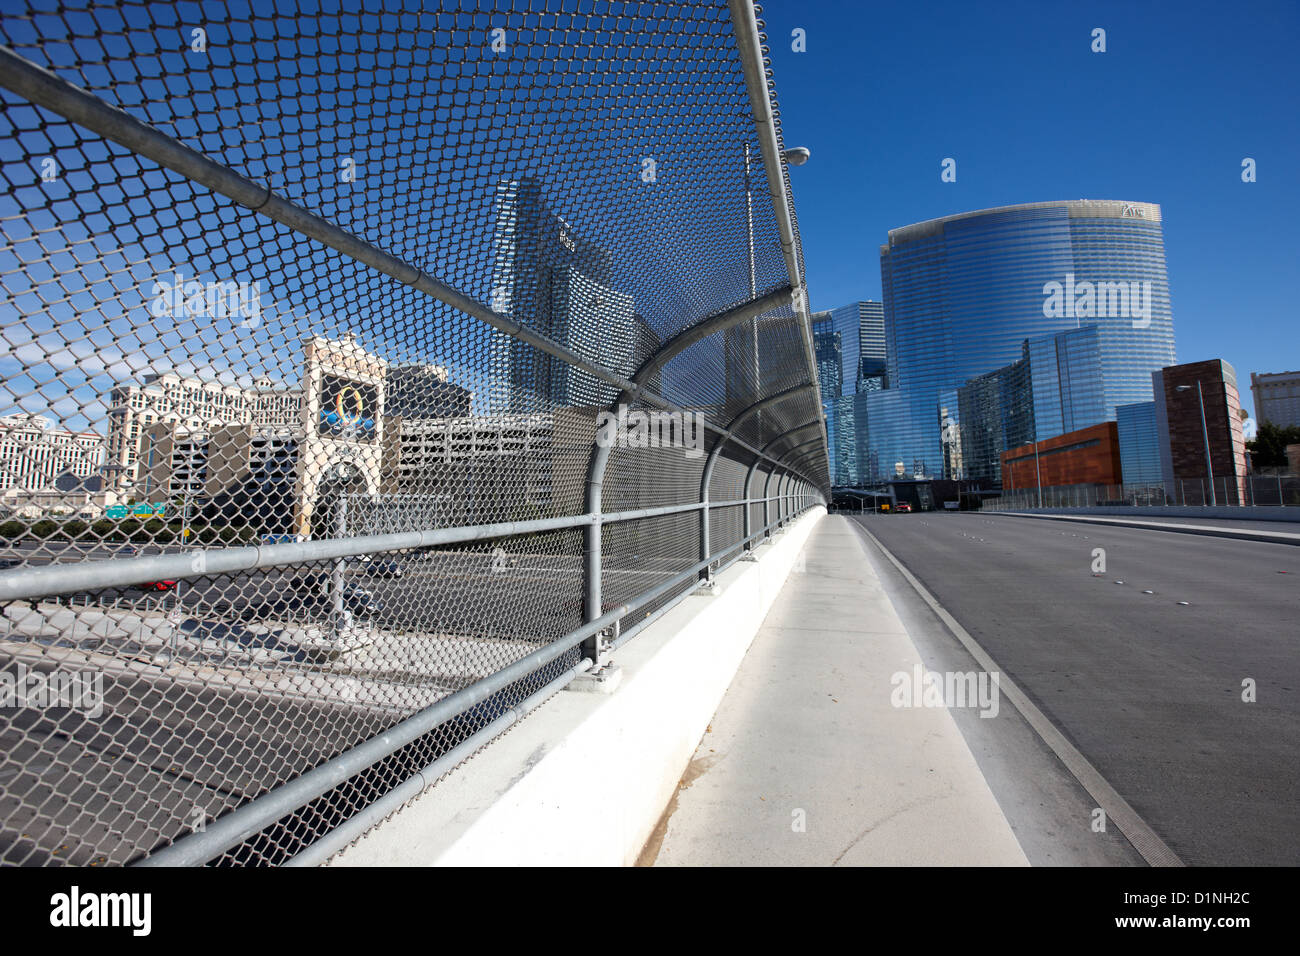 Sicherheitssieb Kette Link Zaun und Gehweg über i-15 Autobahn in Las Vegas Nevada, USA Stockfoto